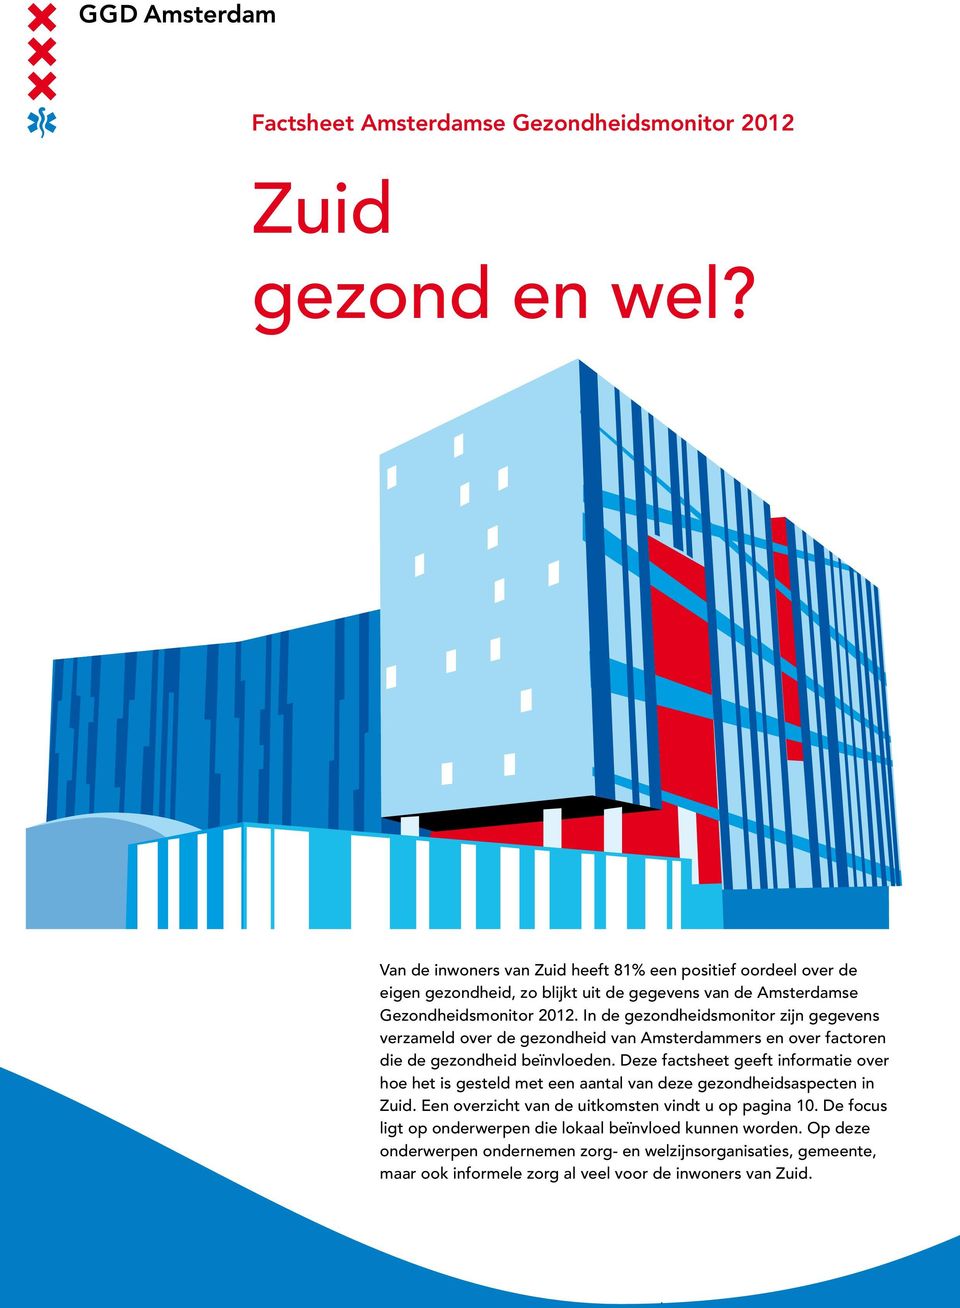 In de gezondheidsmonitor zijn gegevens verzameld over de gezondheid van Amsterdammers en over factoren die de gezondheid beïnvloeden.